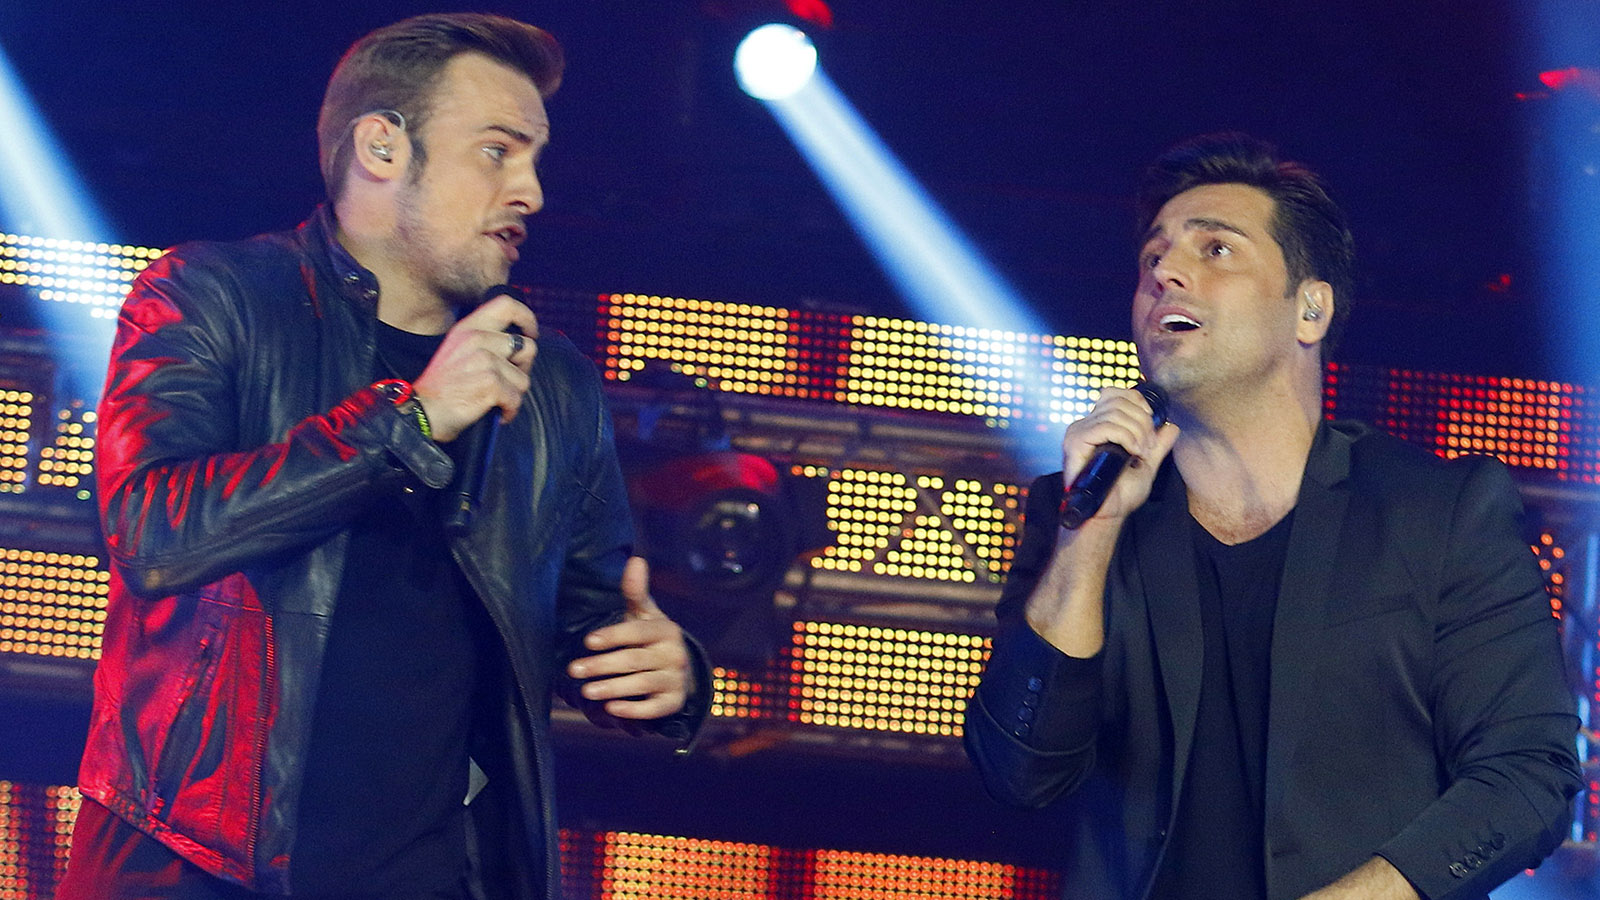 Los cantantes Álex Casademunt y David Bustamante durante el concierto "OT El Reencuentro" en Barcelona.